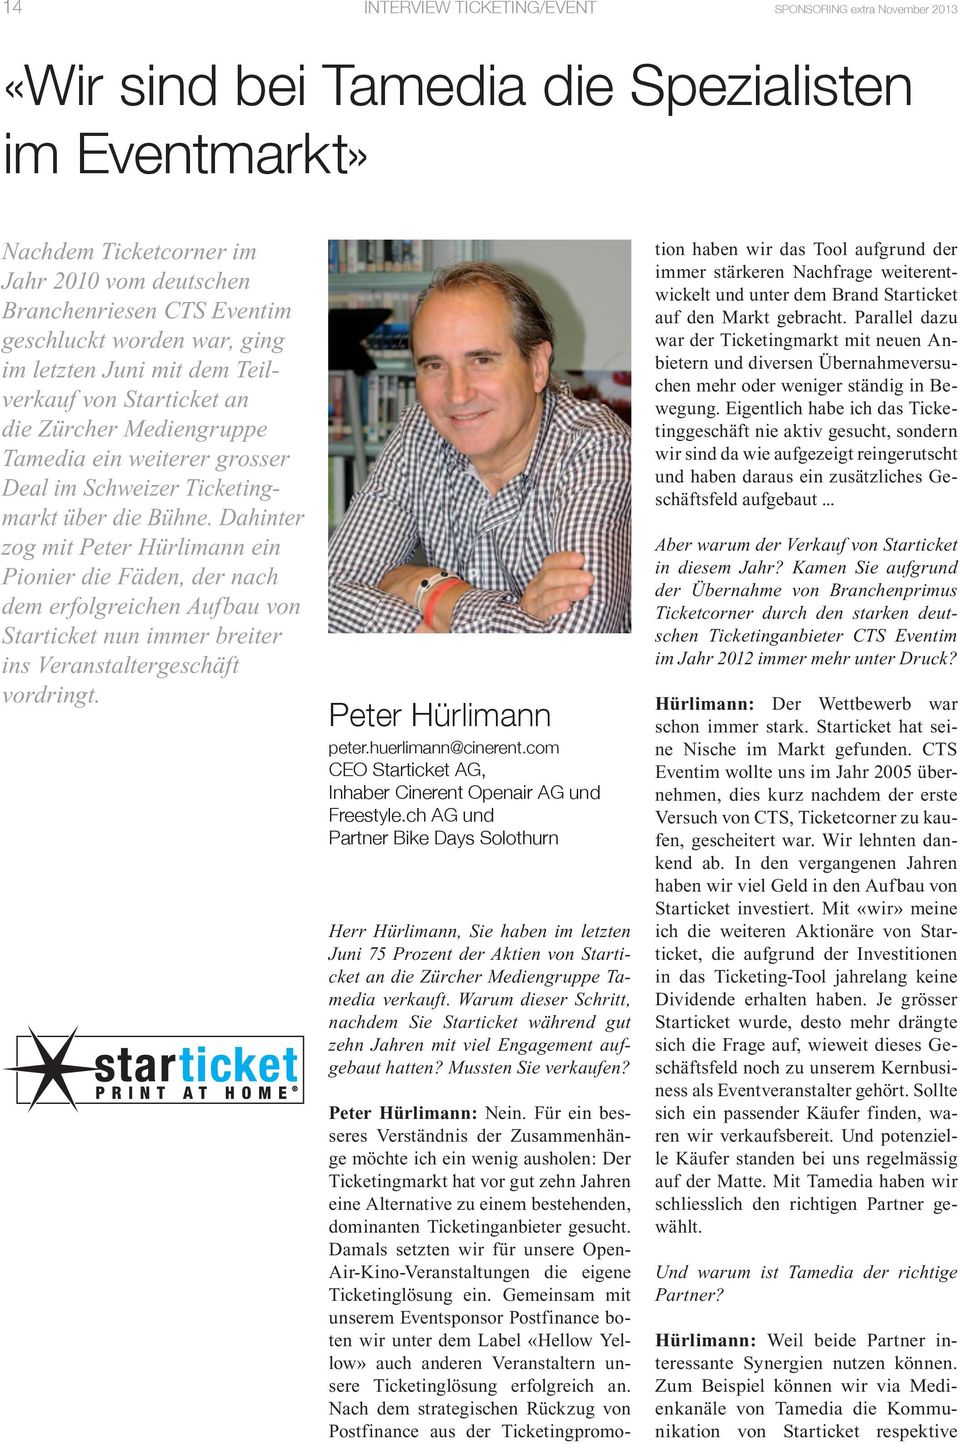 Dahinter zog mit Peter Hürlimann ein Pionier die Fäden, der nach dem erfolgreichen Aufbau von Starticket nun immer breiter ins Veranstaltergeschäft vordringt. Peter Hürlimann peter.